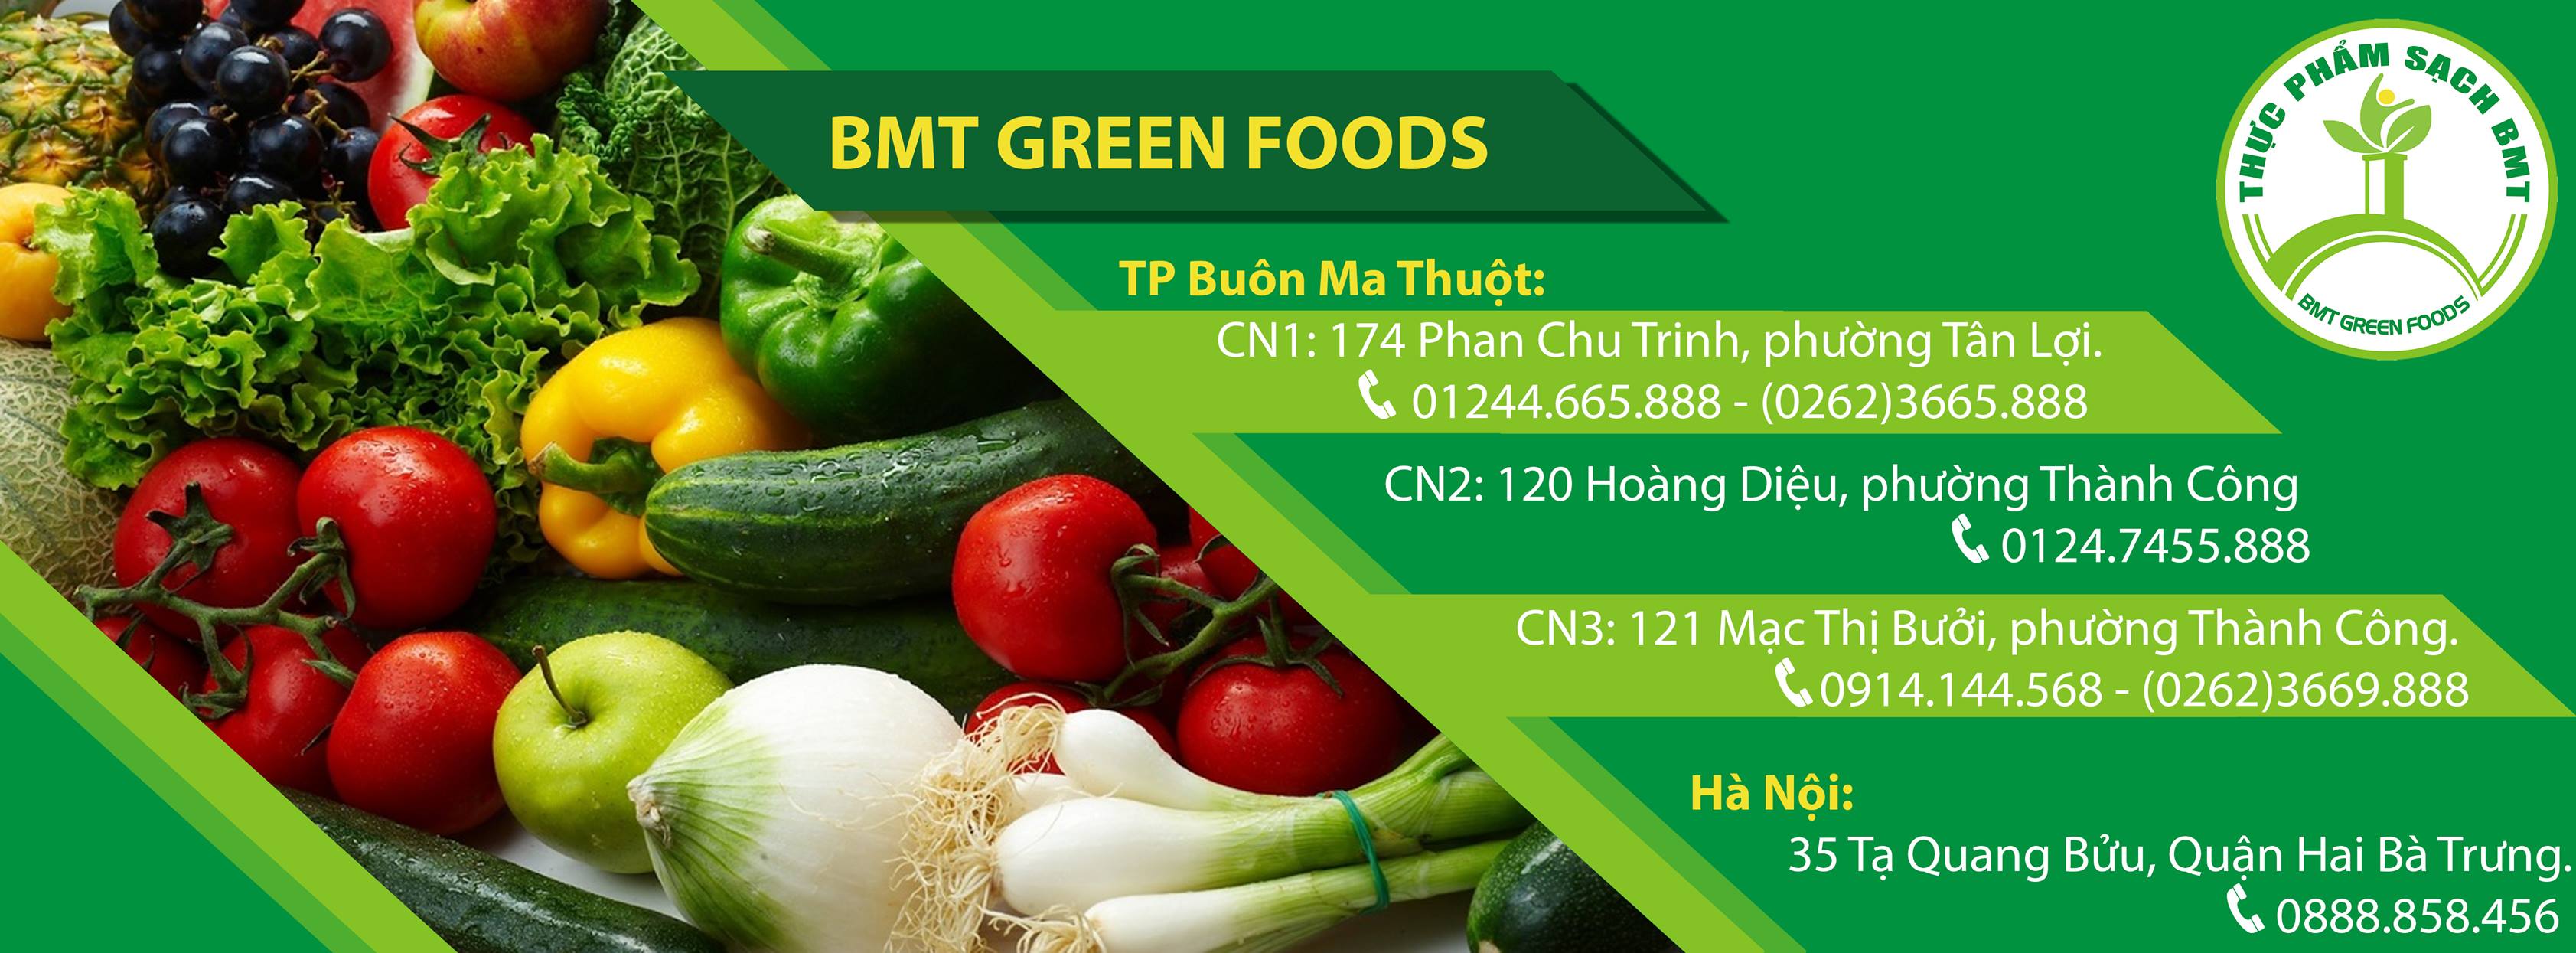 BMT GREEN FOODS - Cửa hàng thực phẩm sạch Buôn Ma Thuột